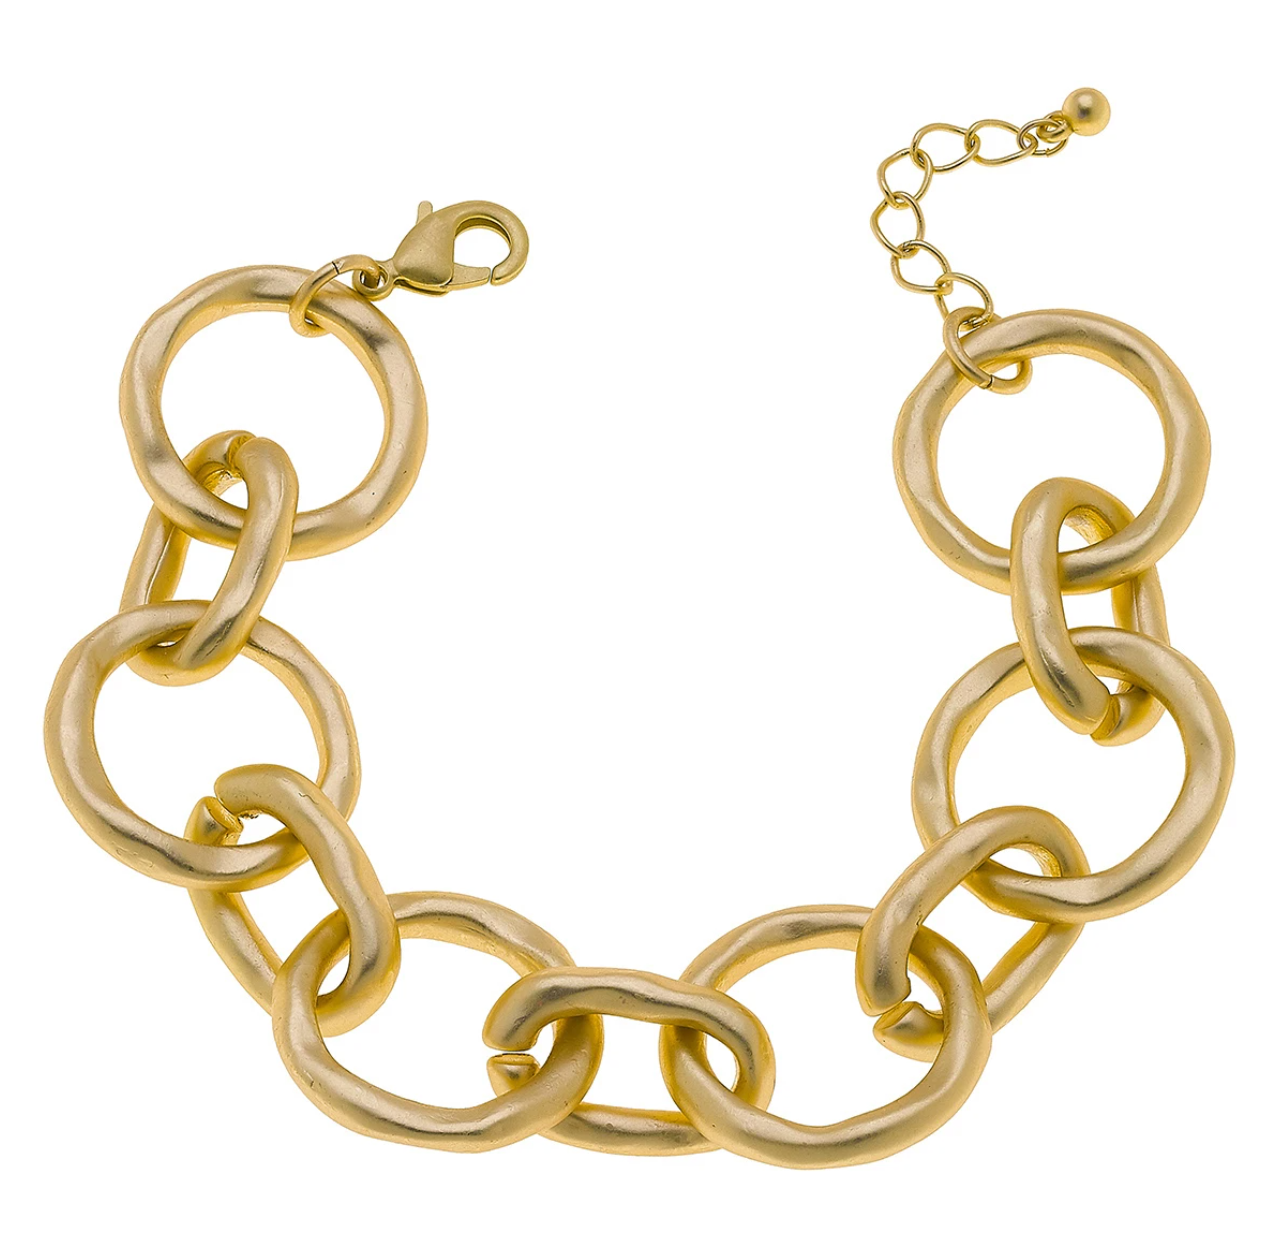 Blythe Chain Link Bracelet